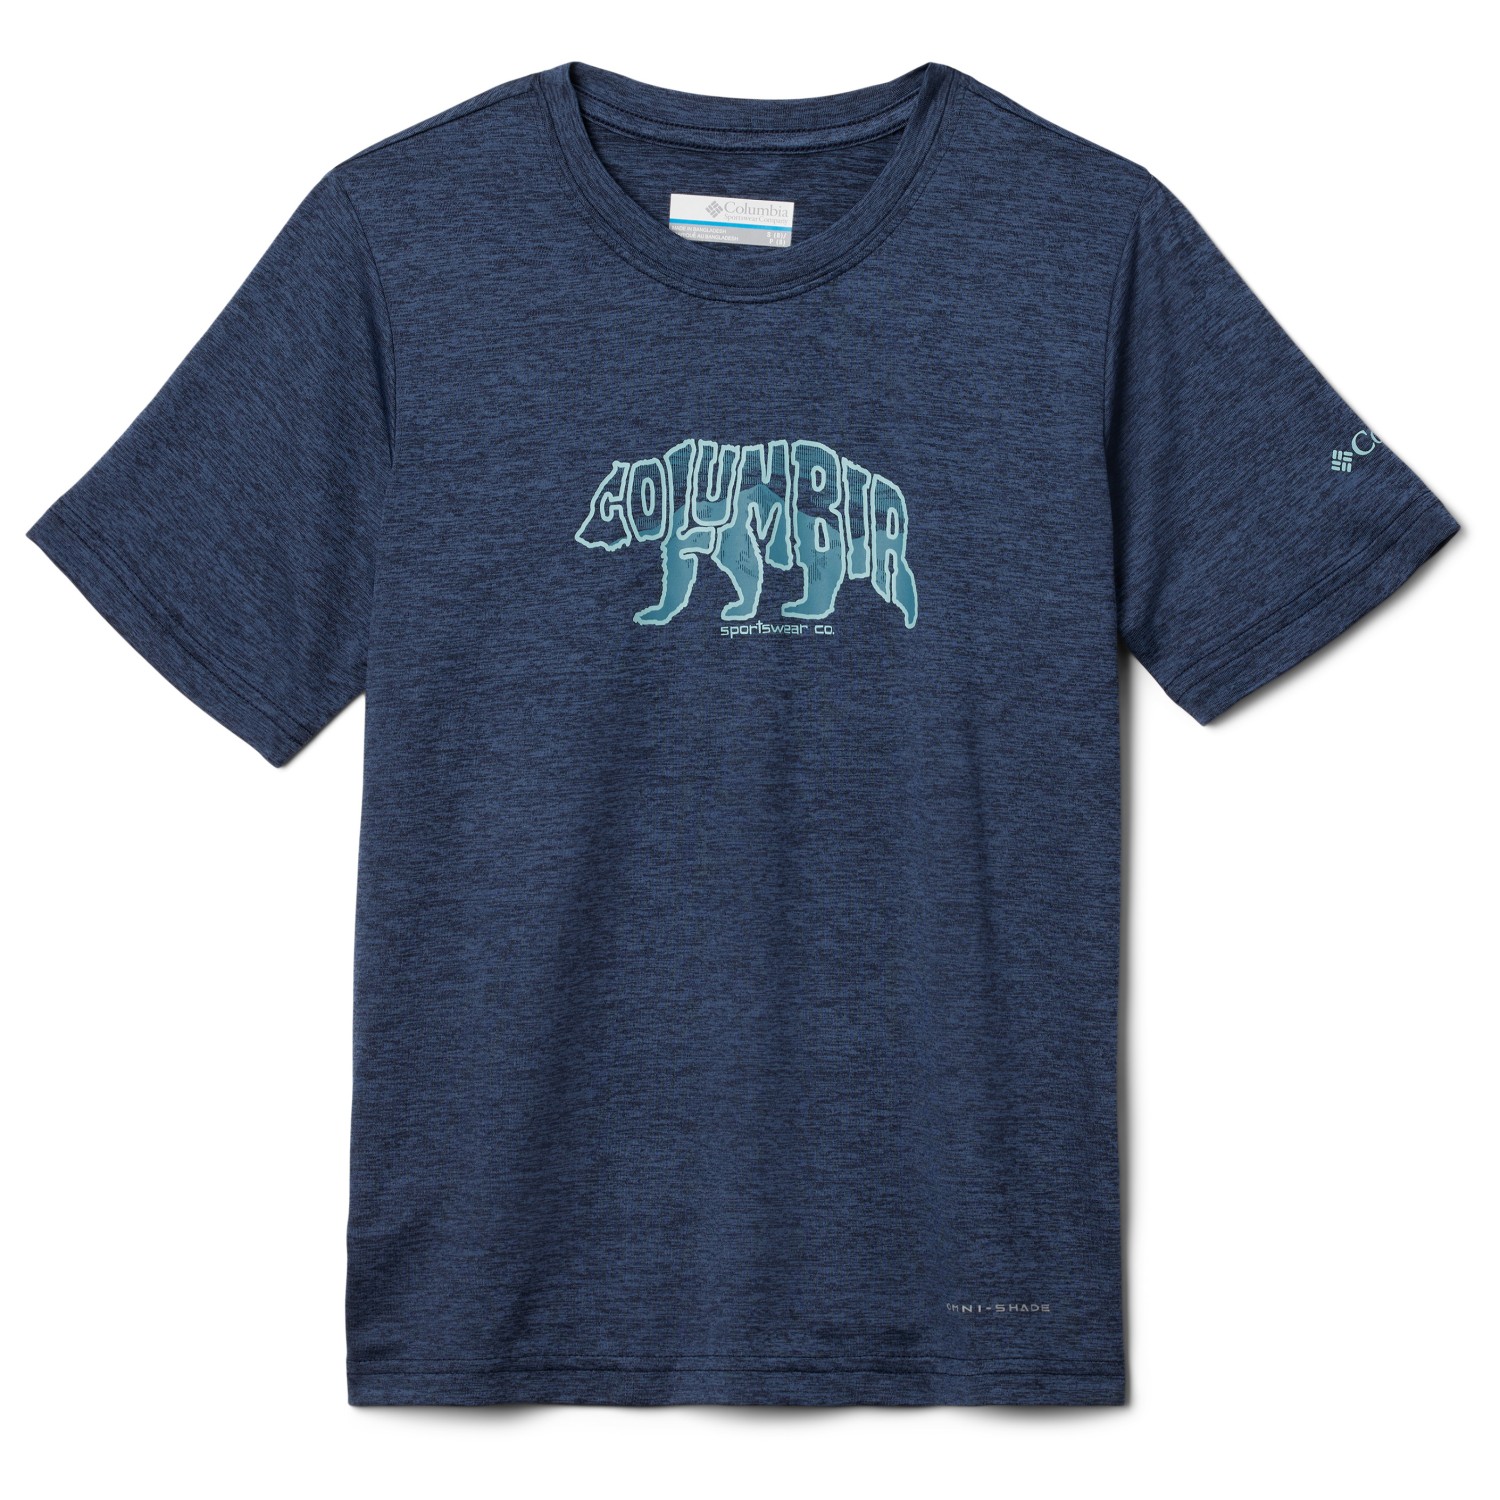 Функциональная рубашка Columbia Kid's Mount Echo Graphic Shirt S/S, цвет Collegiate Navy/Bearly Stroll рубашка rip curl apex s s shirt цвет 3021 bone размер m